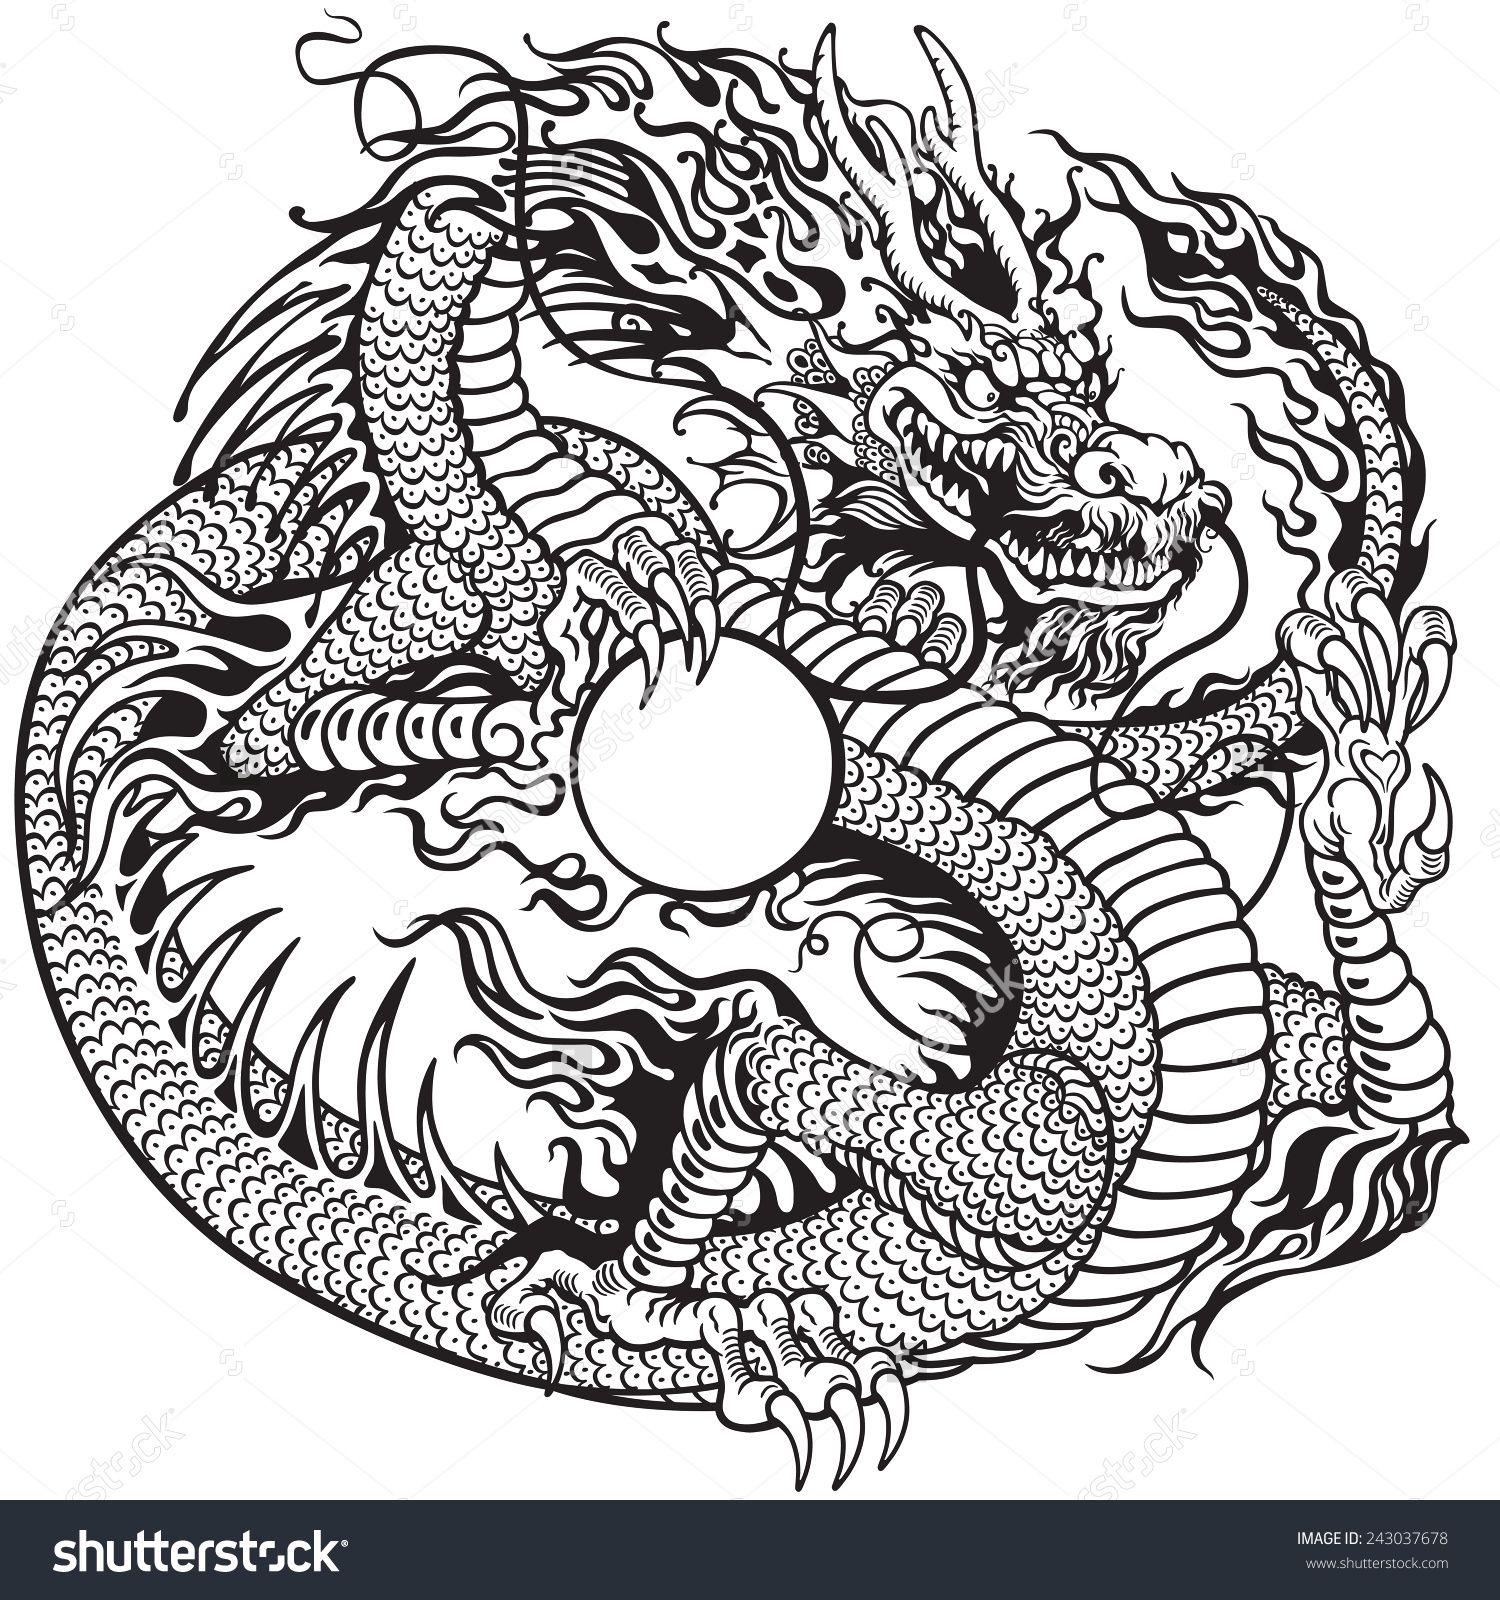 100 000 изображений по запросу Дракон тату доступны в рамках роялти-фри лицензии